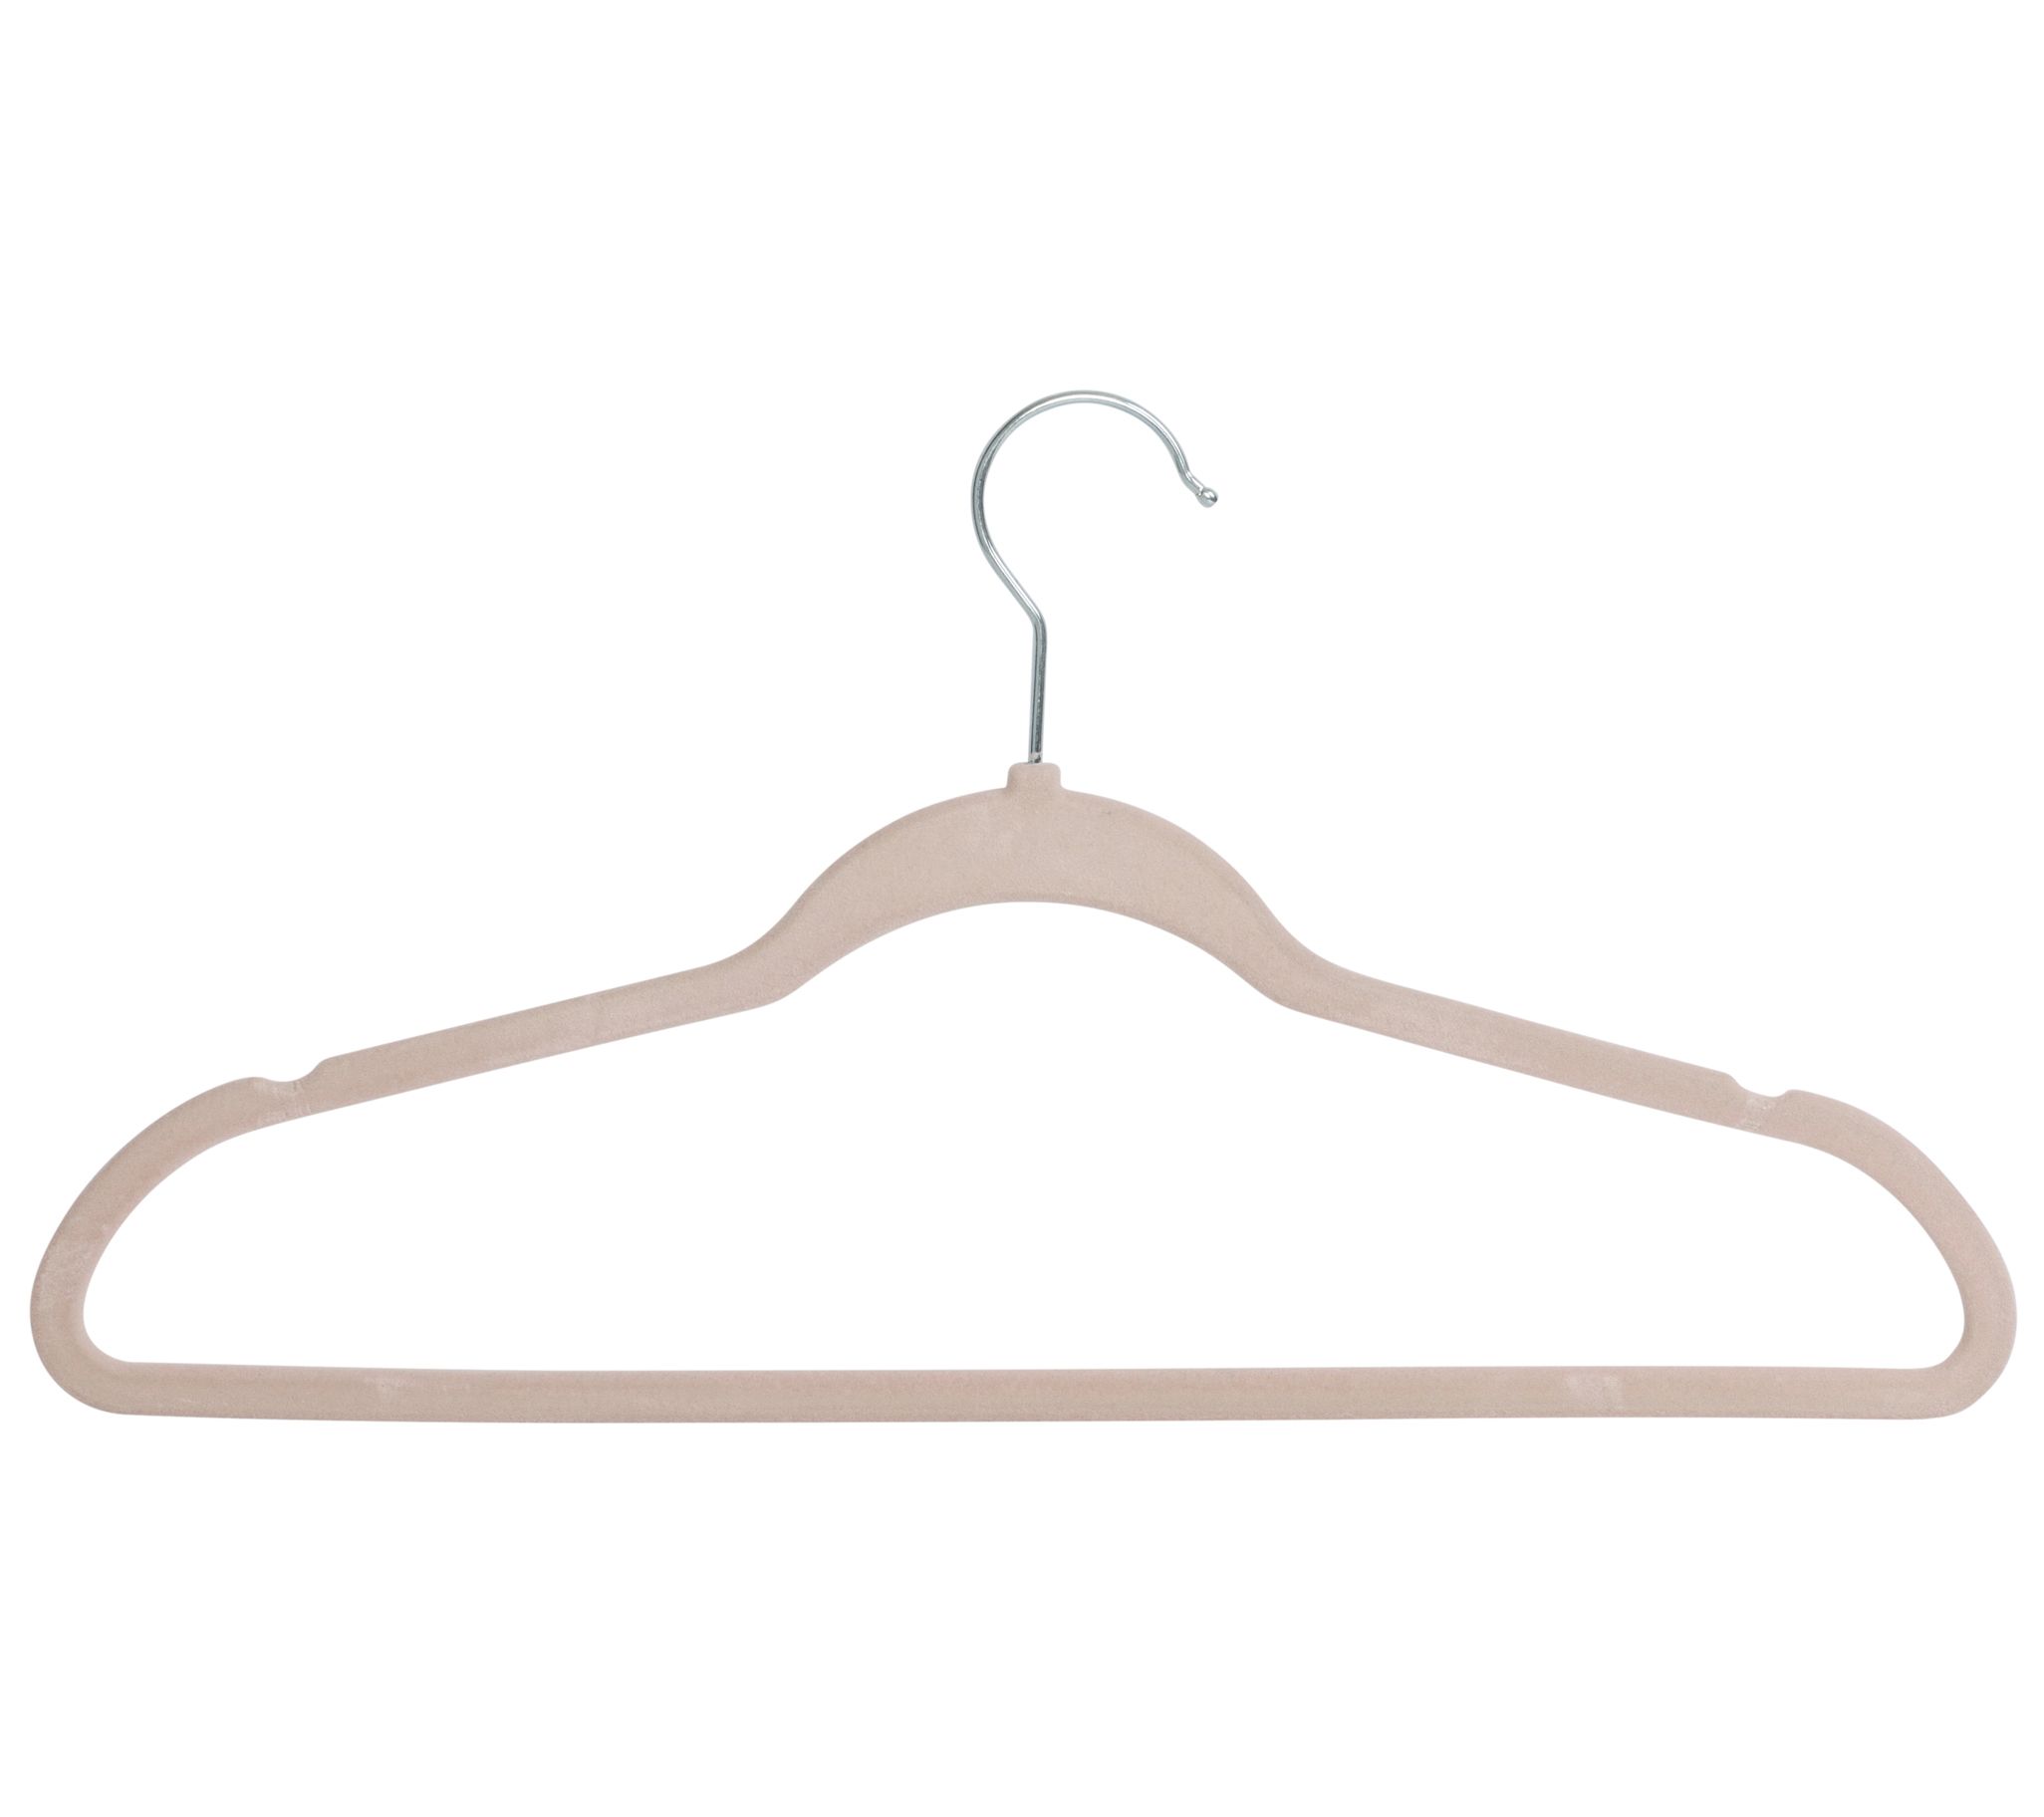 Clothes Hangers  Pants Hangers, Plastic & Wood Hangers 